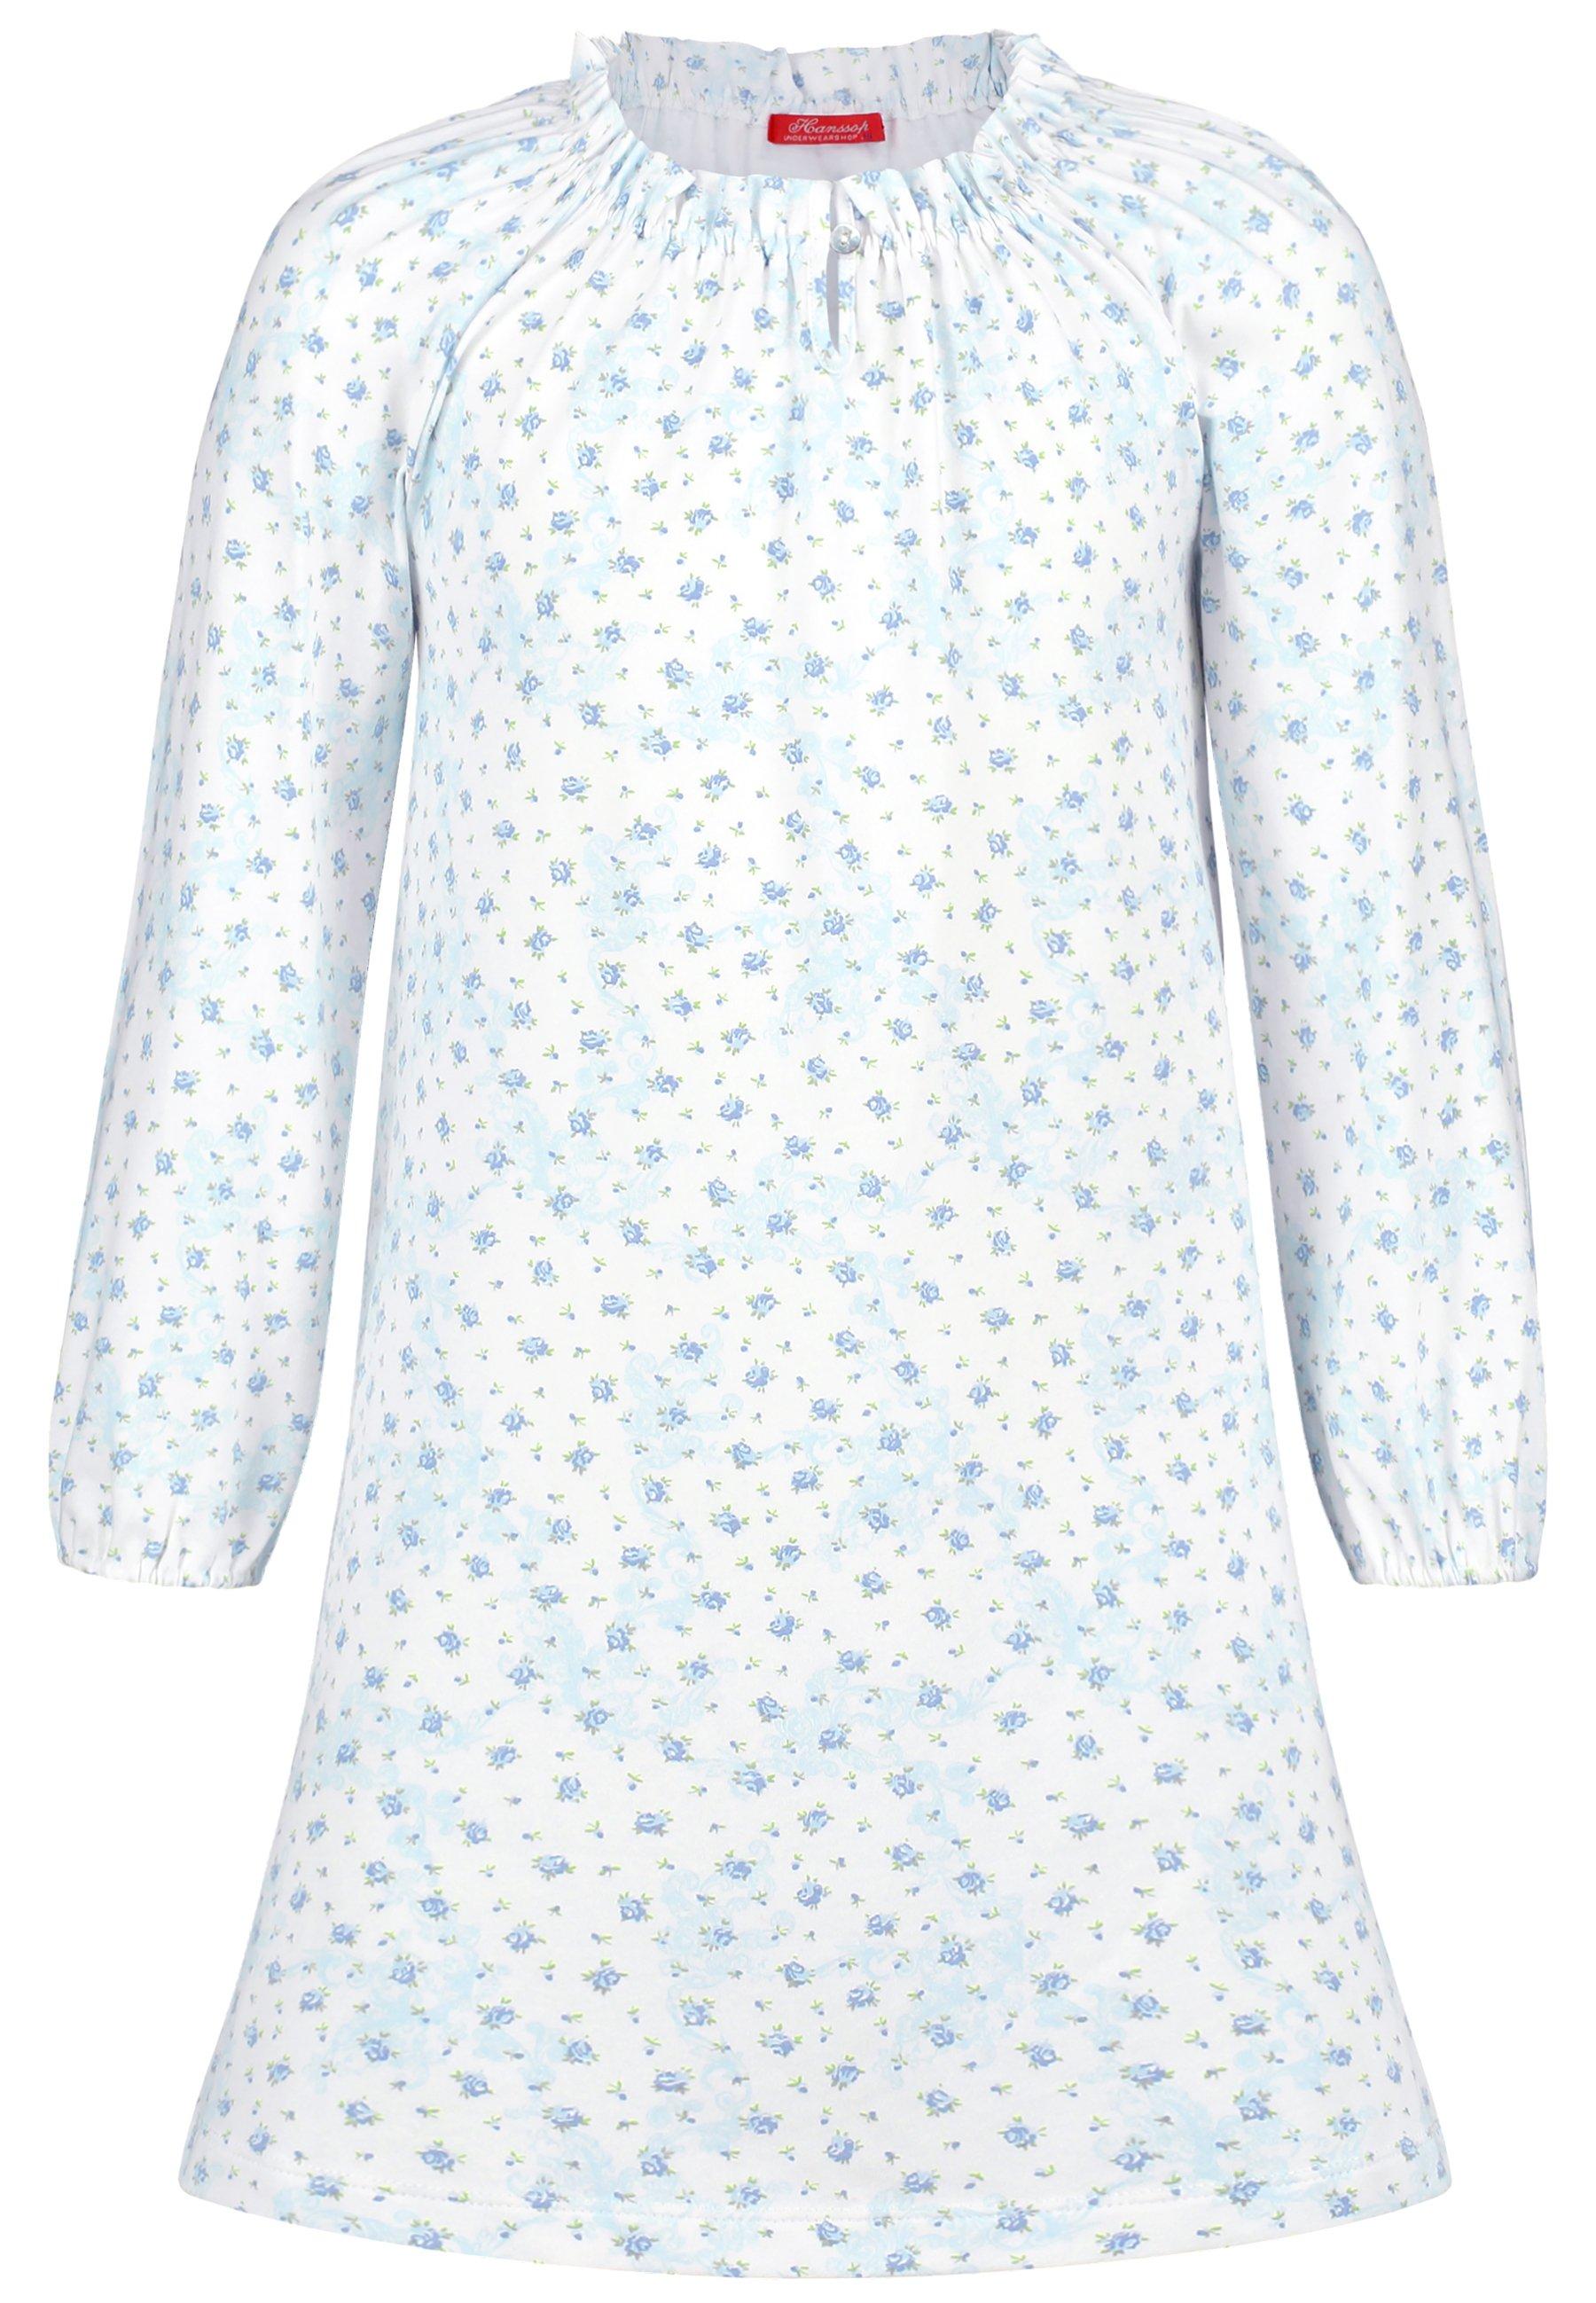 Nightgown Long Sleeves Design Mädchen Hellblau 146/152 von Hanssop